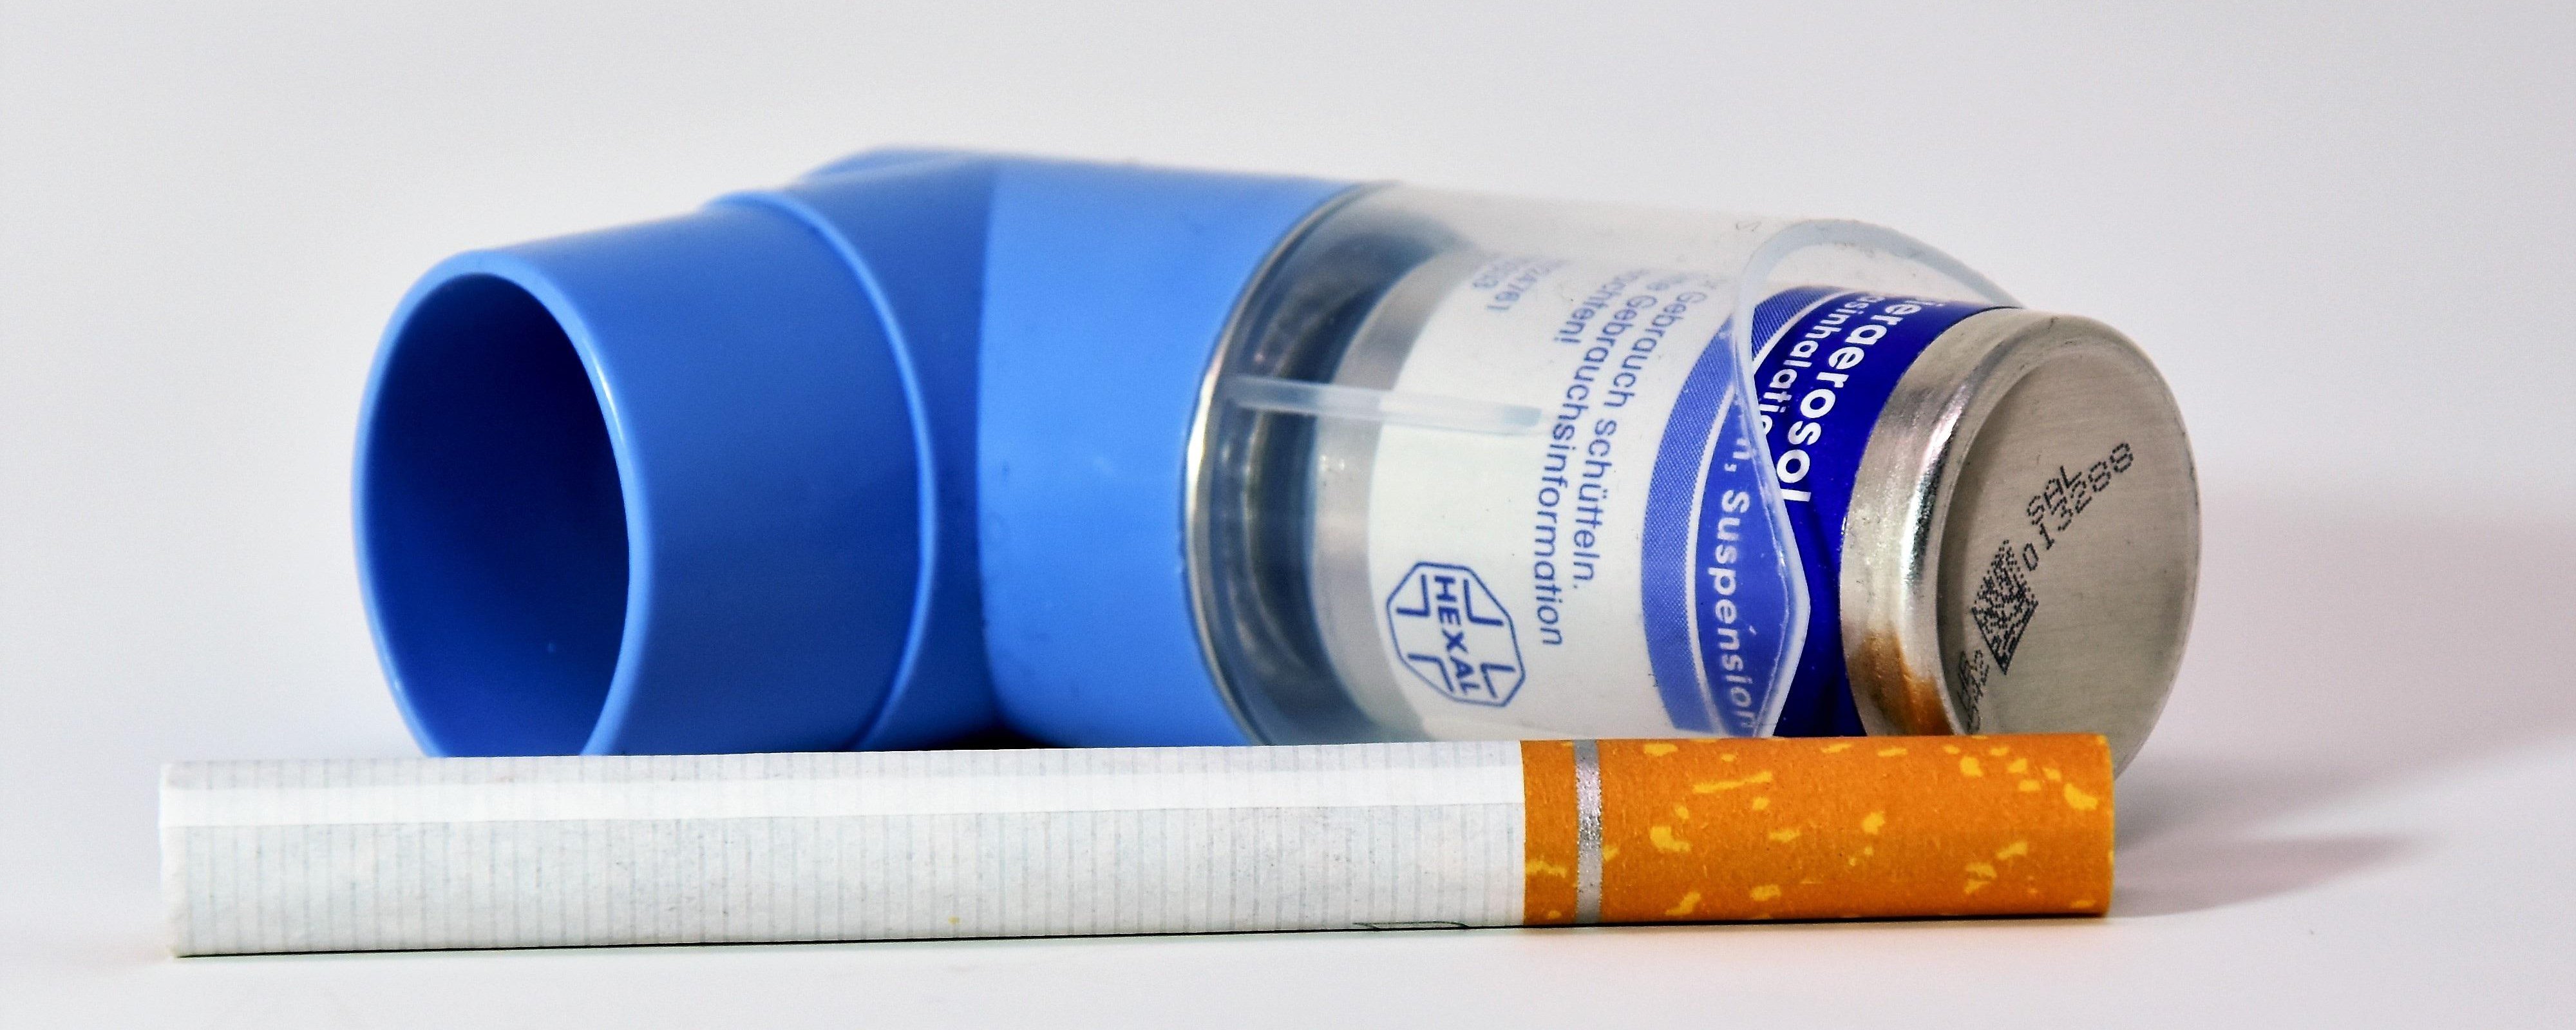 Symbolbild Zigarette und Asthmaspray